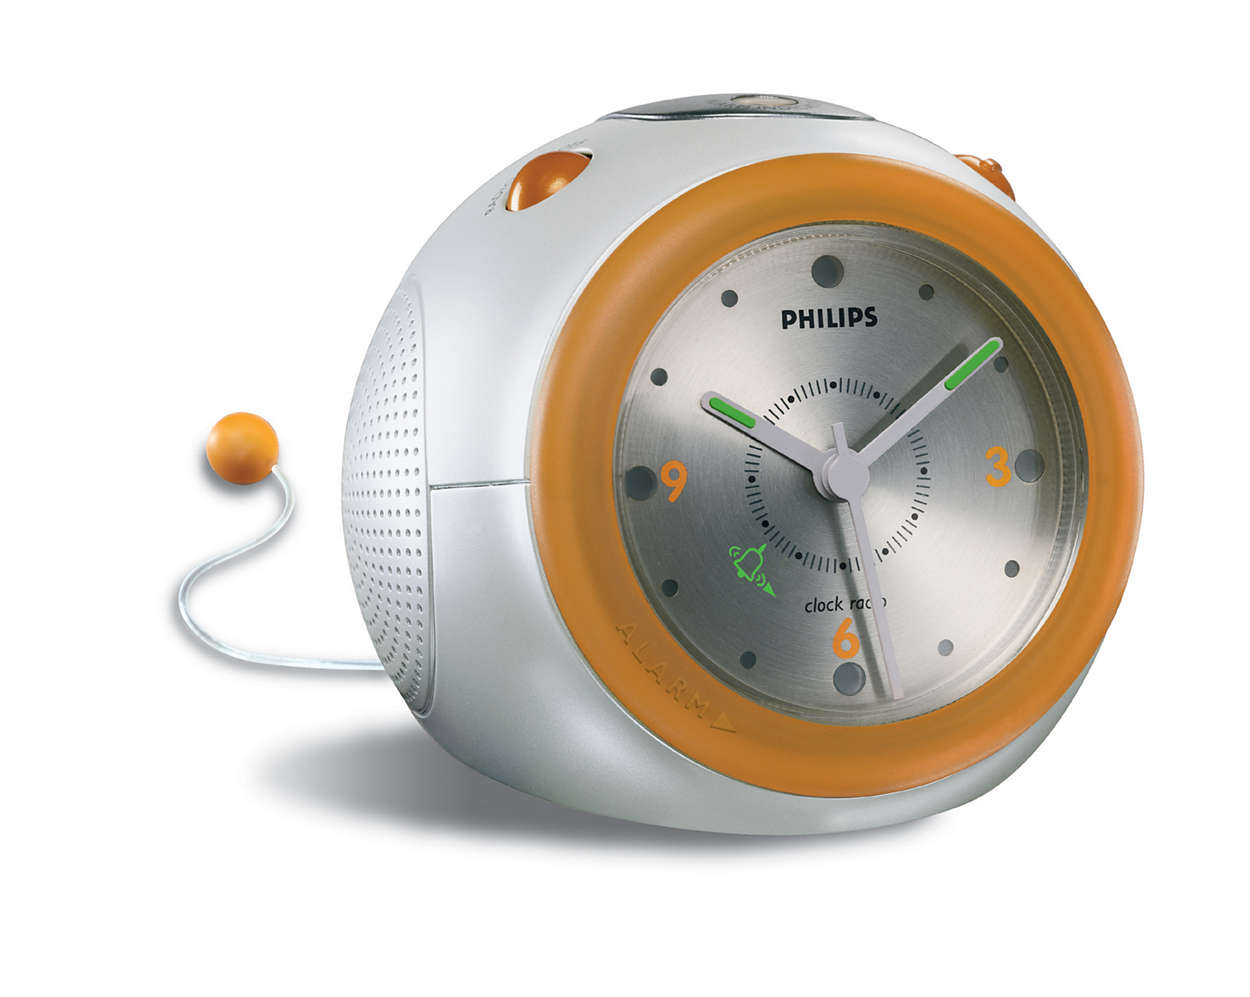 Analogue alarm time clock